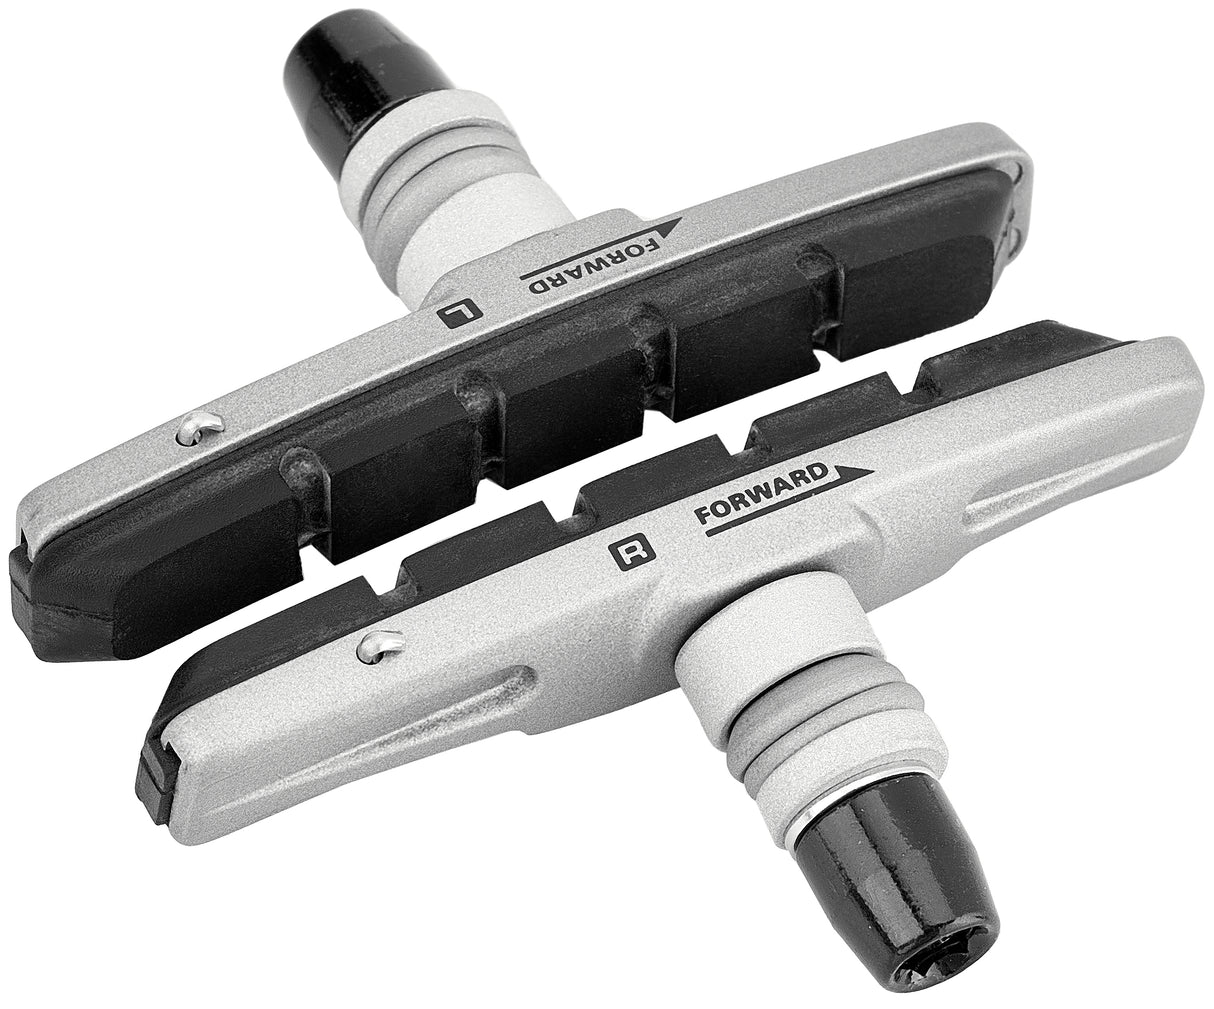 Shimano S70C remschoencartridge voor BR-T670 zilver/zwart